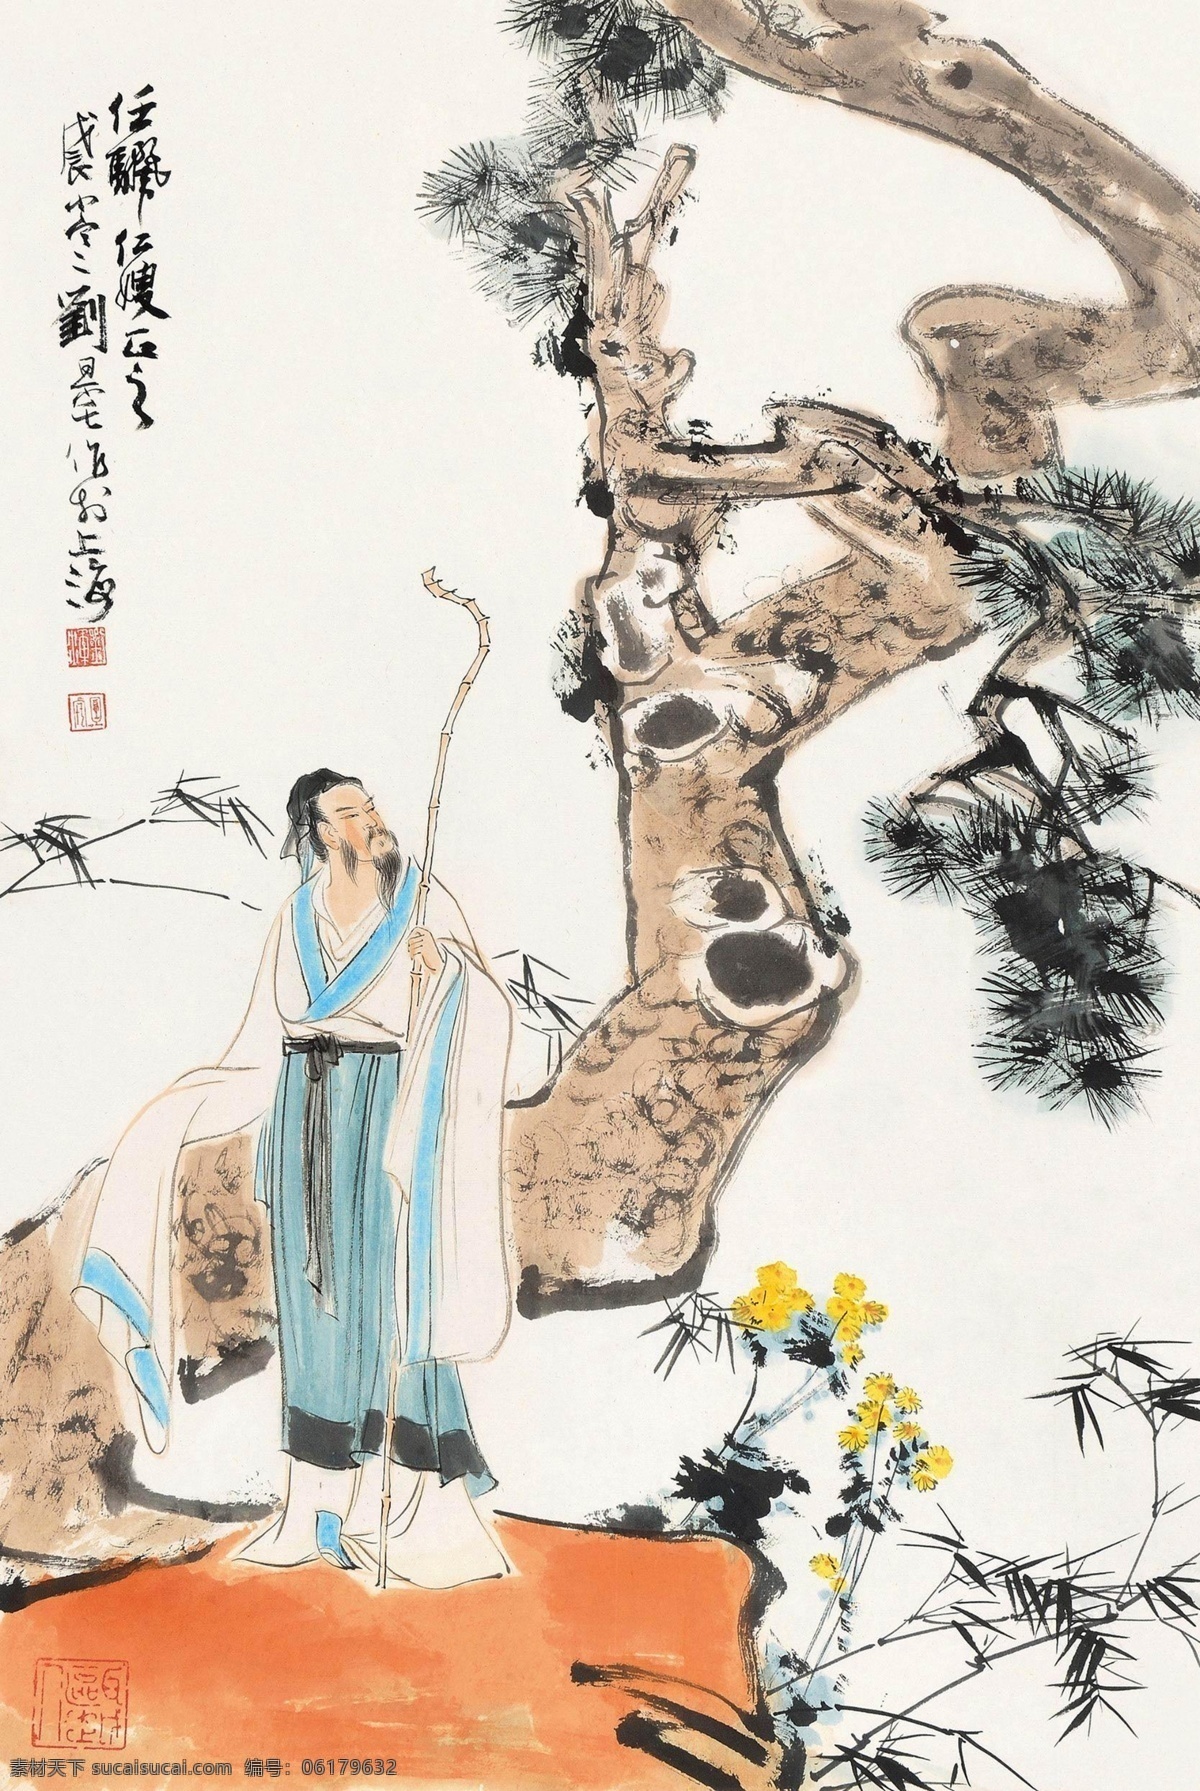 刘旦宅 国画 中国画 传统画图片 传统画 名家 绘画 文化艺术 绘画书法 水墨